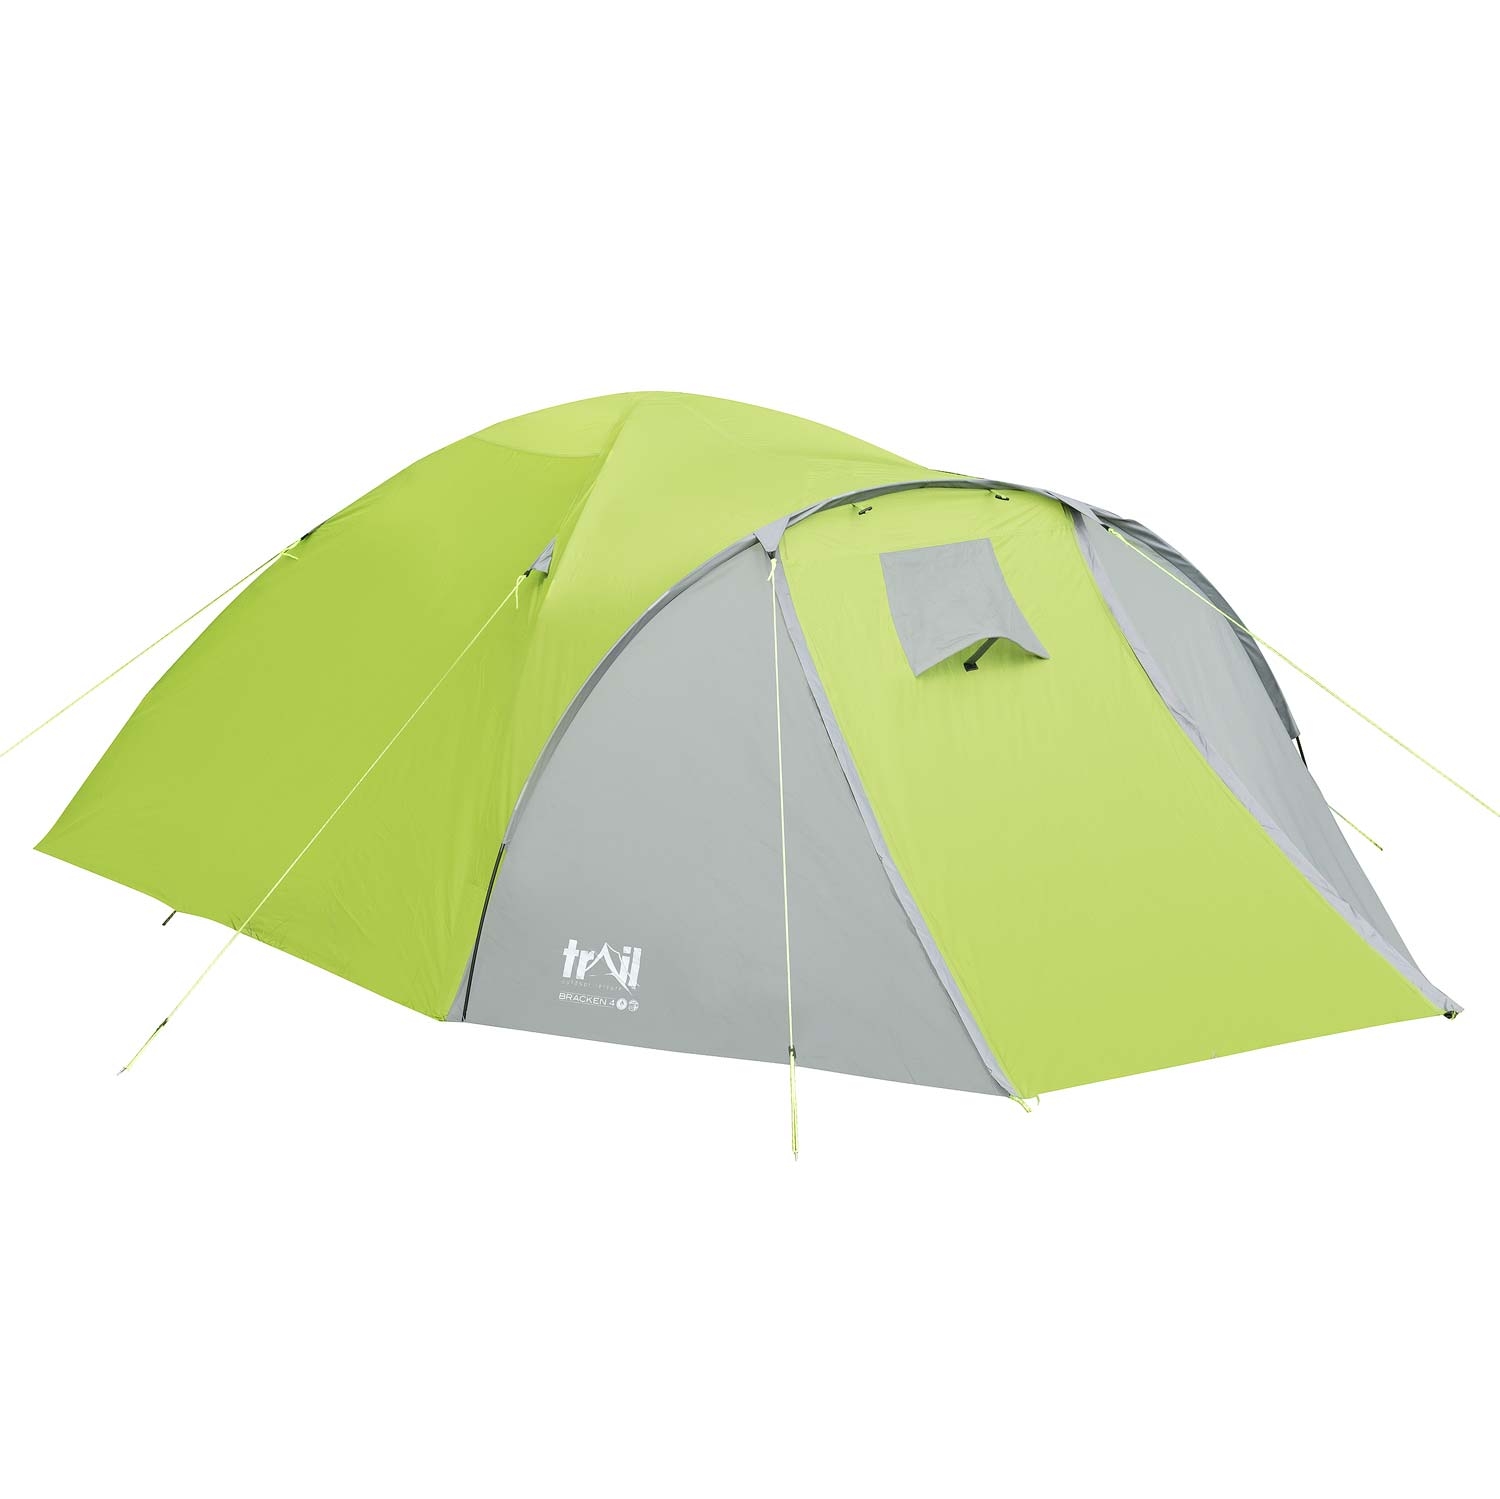 Bracken 4 Man Tent - Green